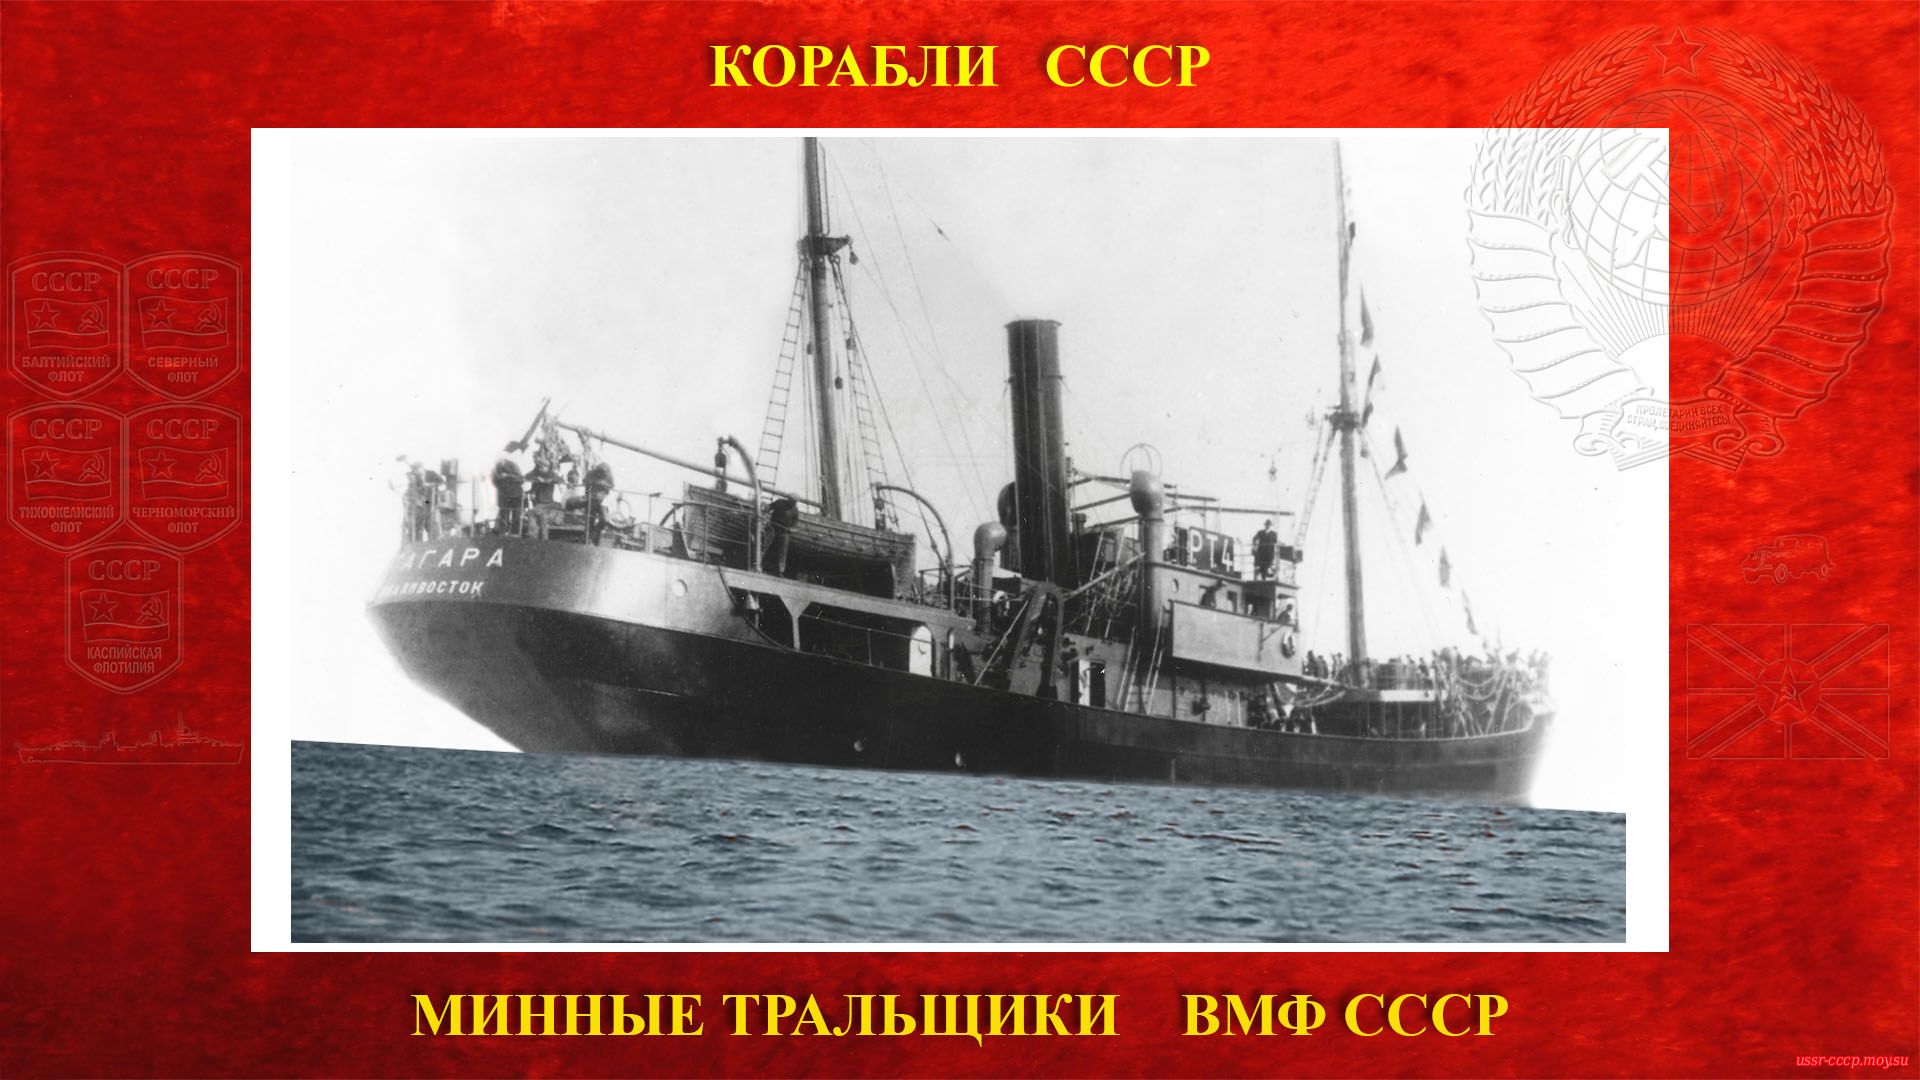 Т-13 (Гагара) — Советский минный тральщик ВМФ СССР (повествование)